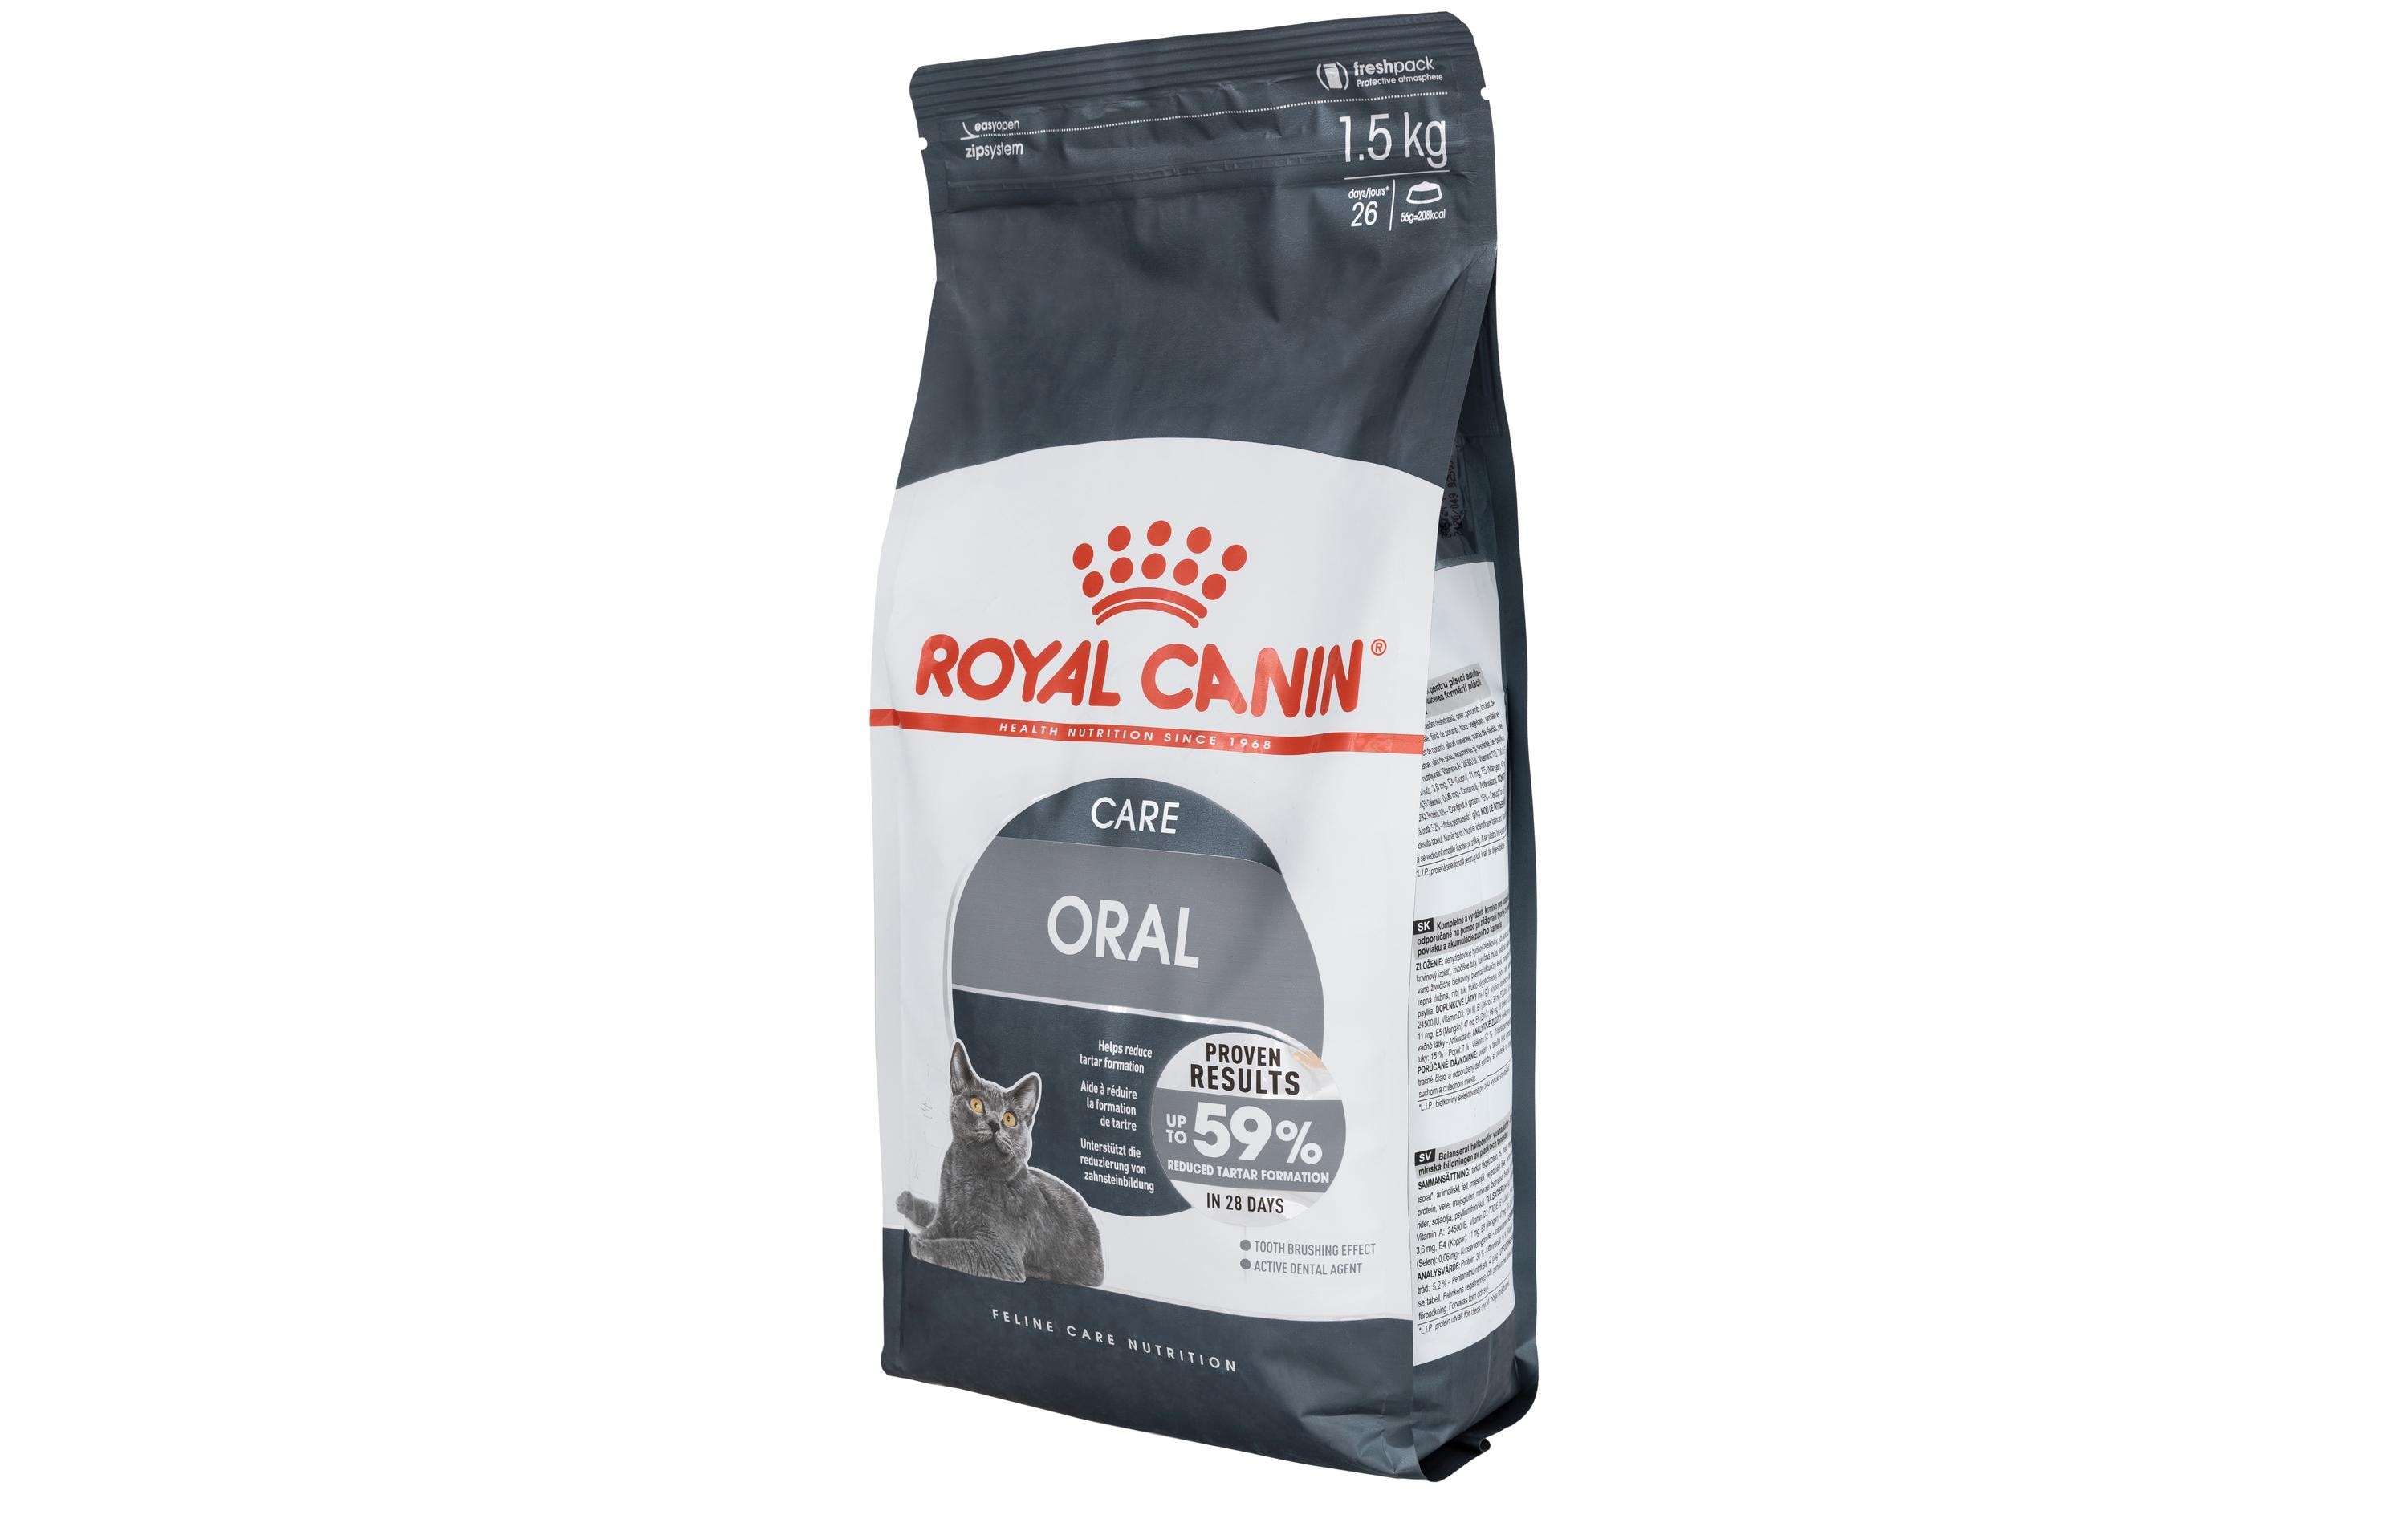 Royal Canin Trockenfutter Oral Care, 1.5 kg